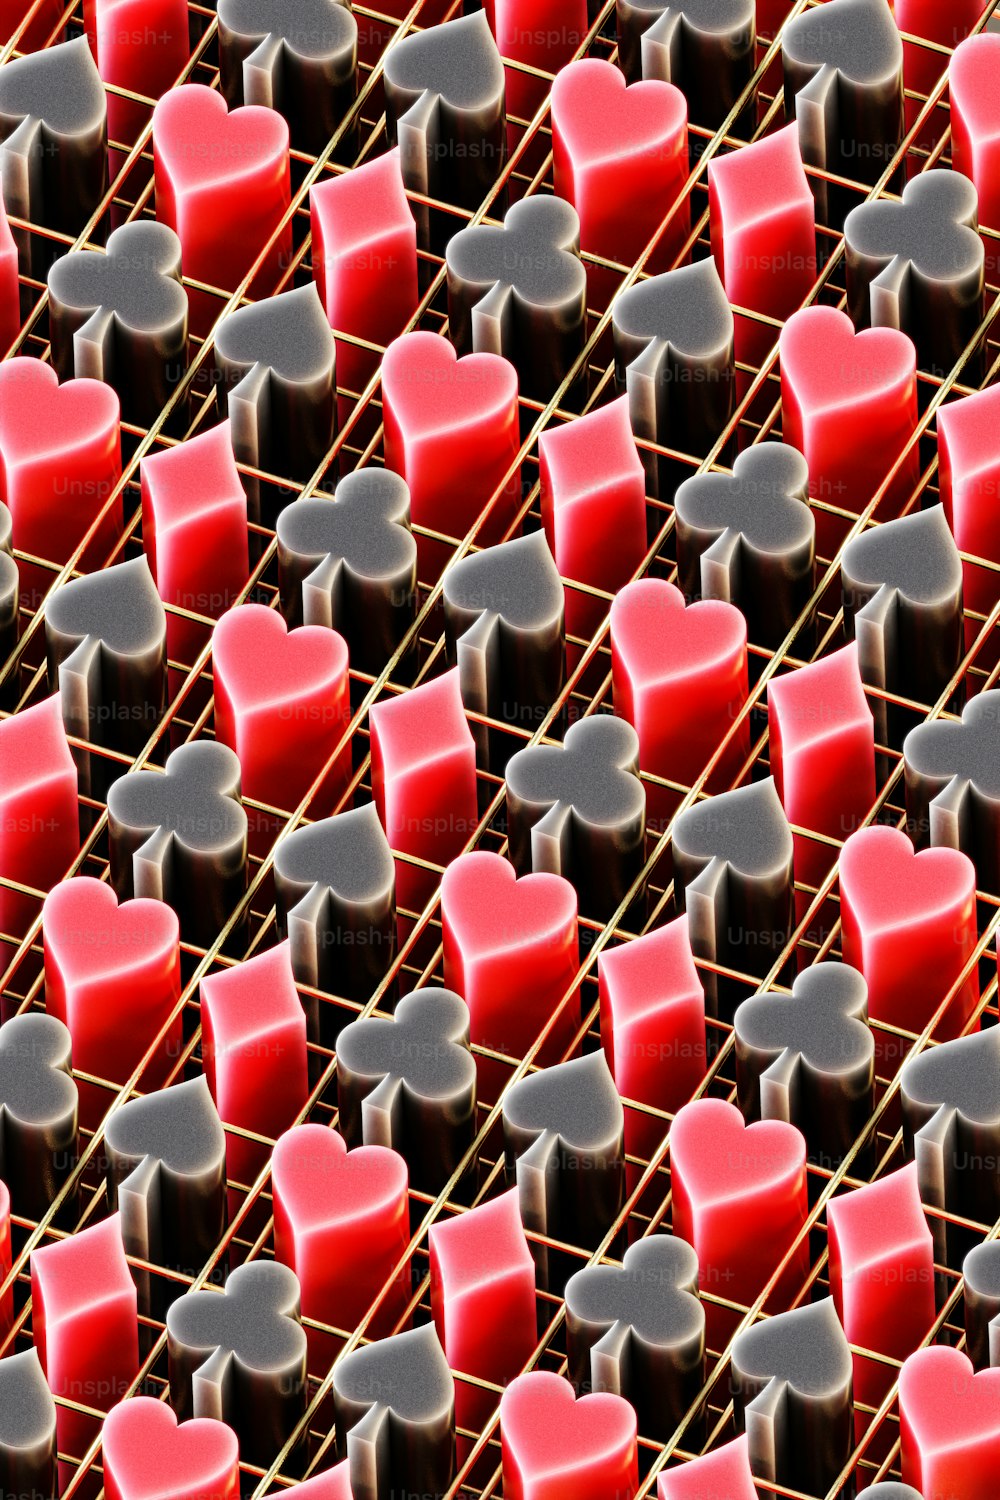 Un grupo de corazones rojos y negros sentados encima de un estante de metal